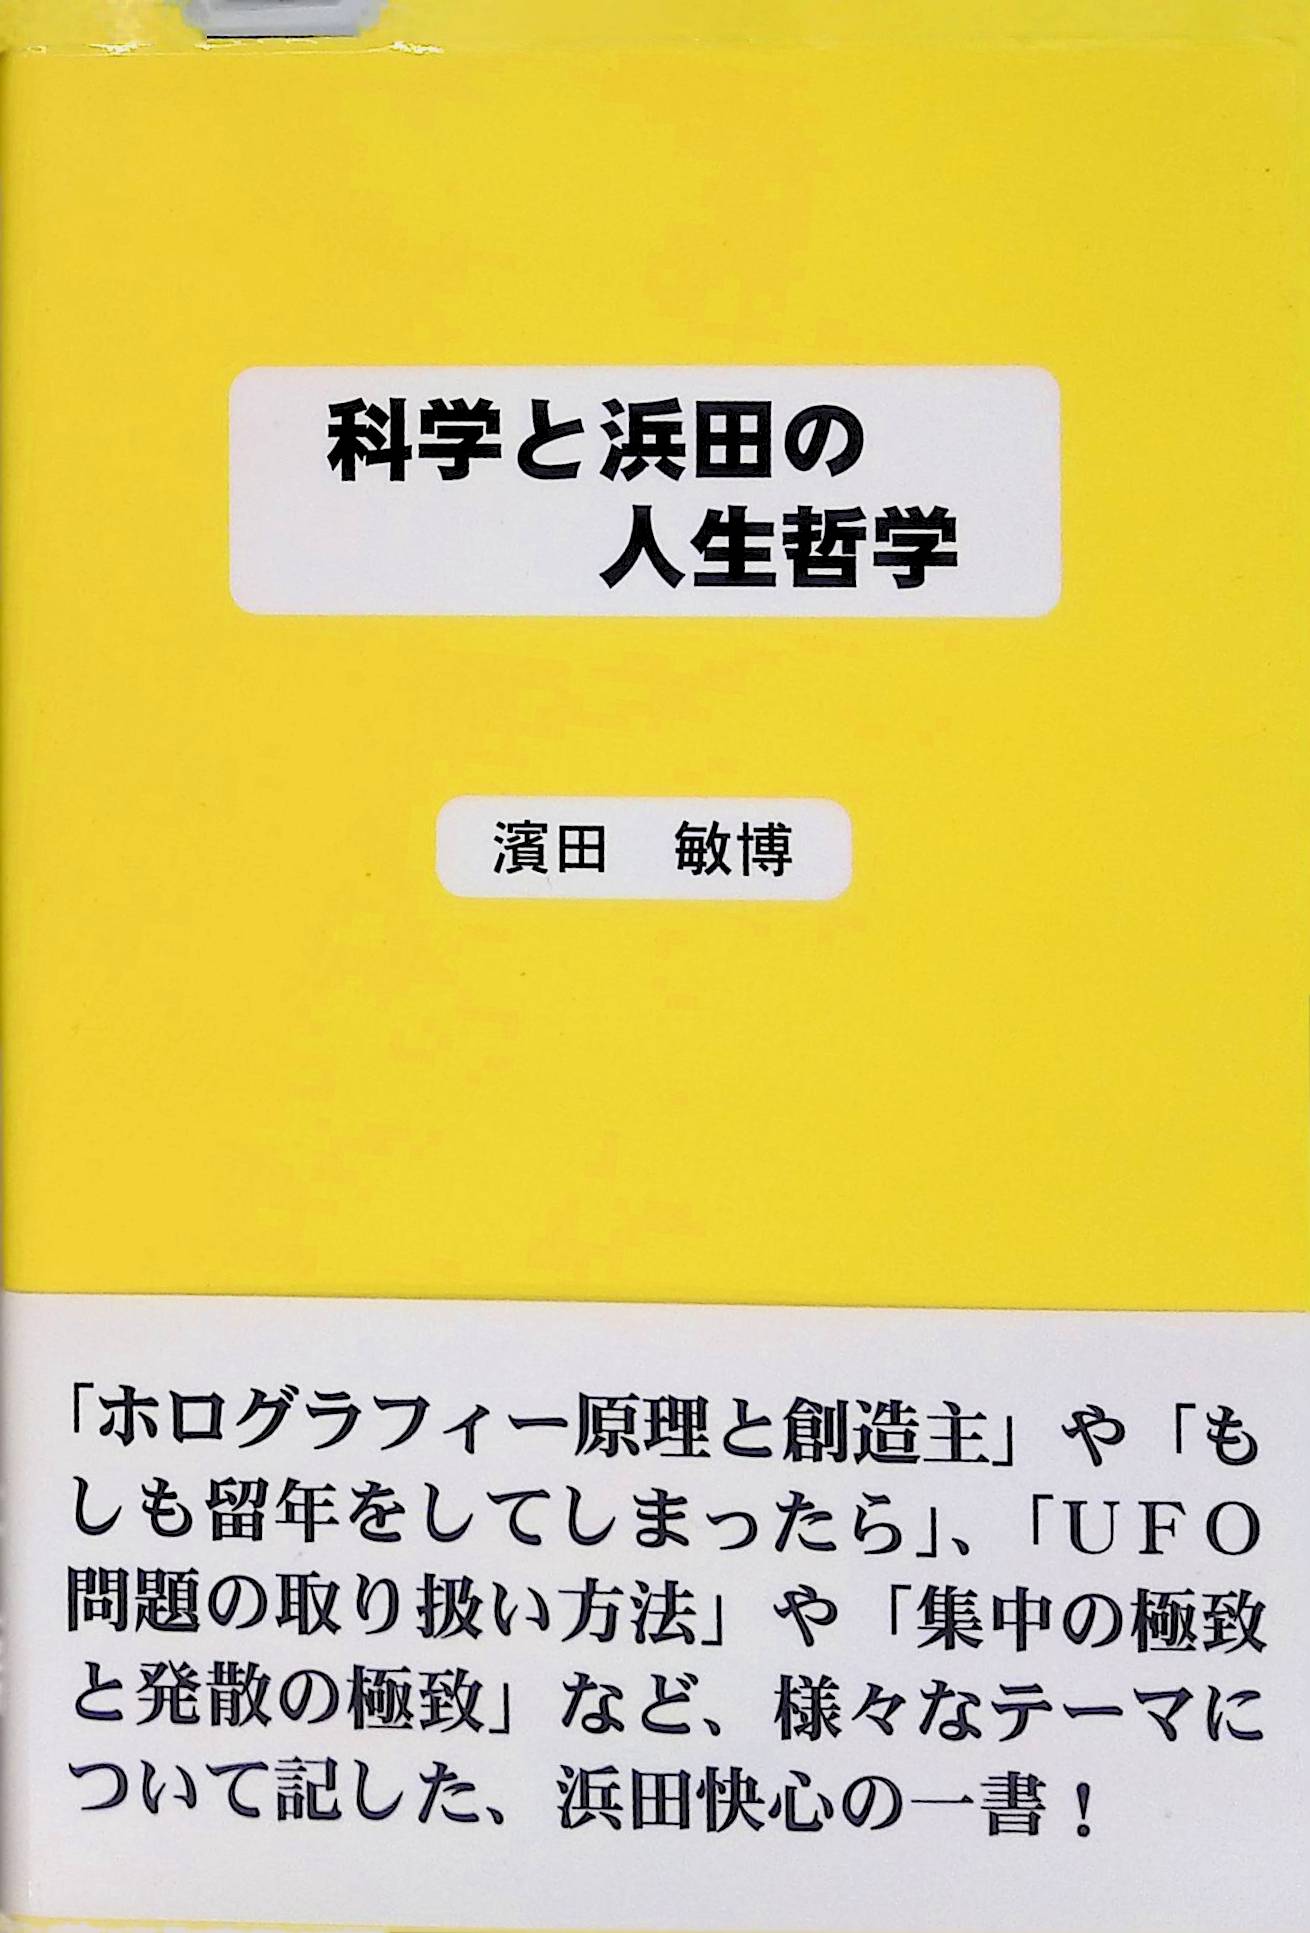 科学と浜田の人生哲学 濱田 敏博(ISBN:9784990598907)